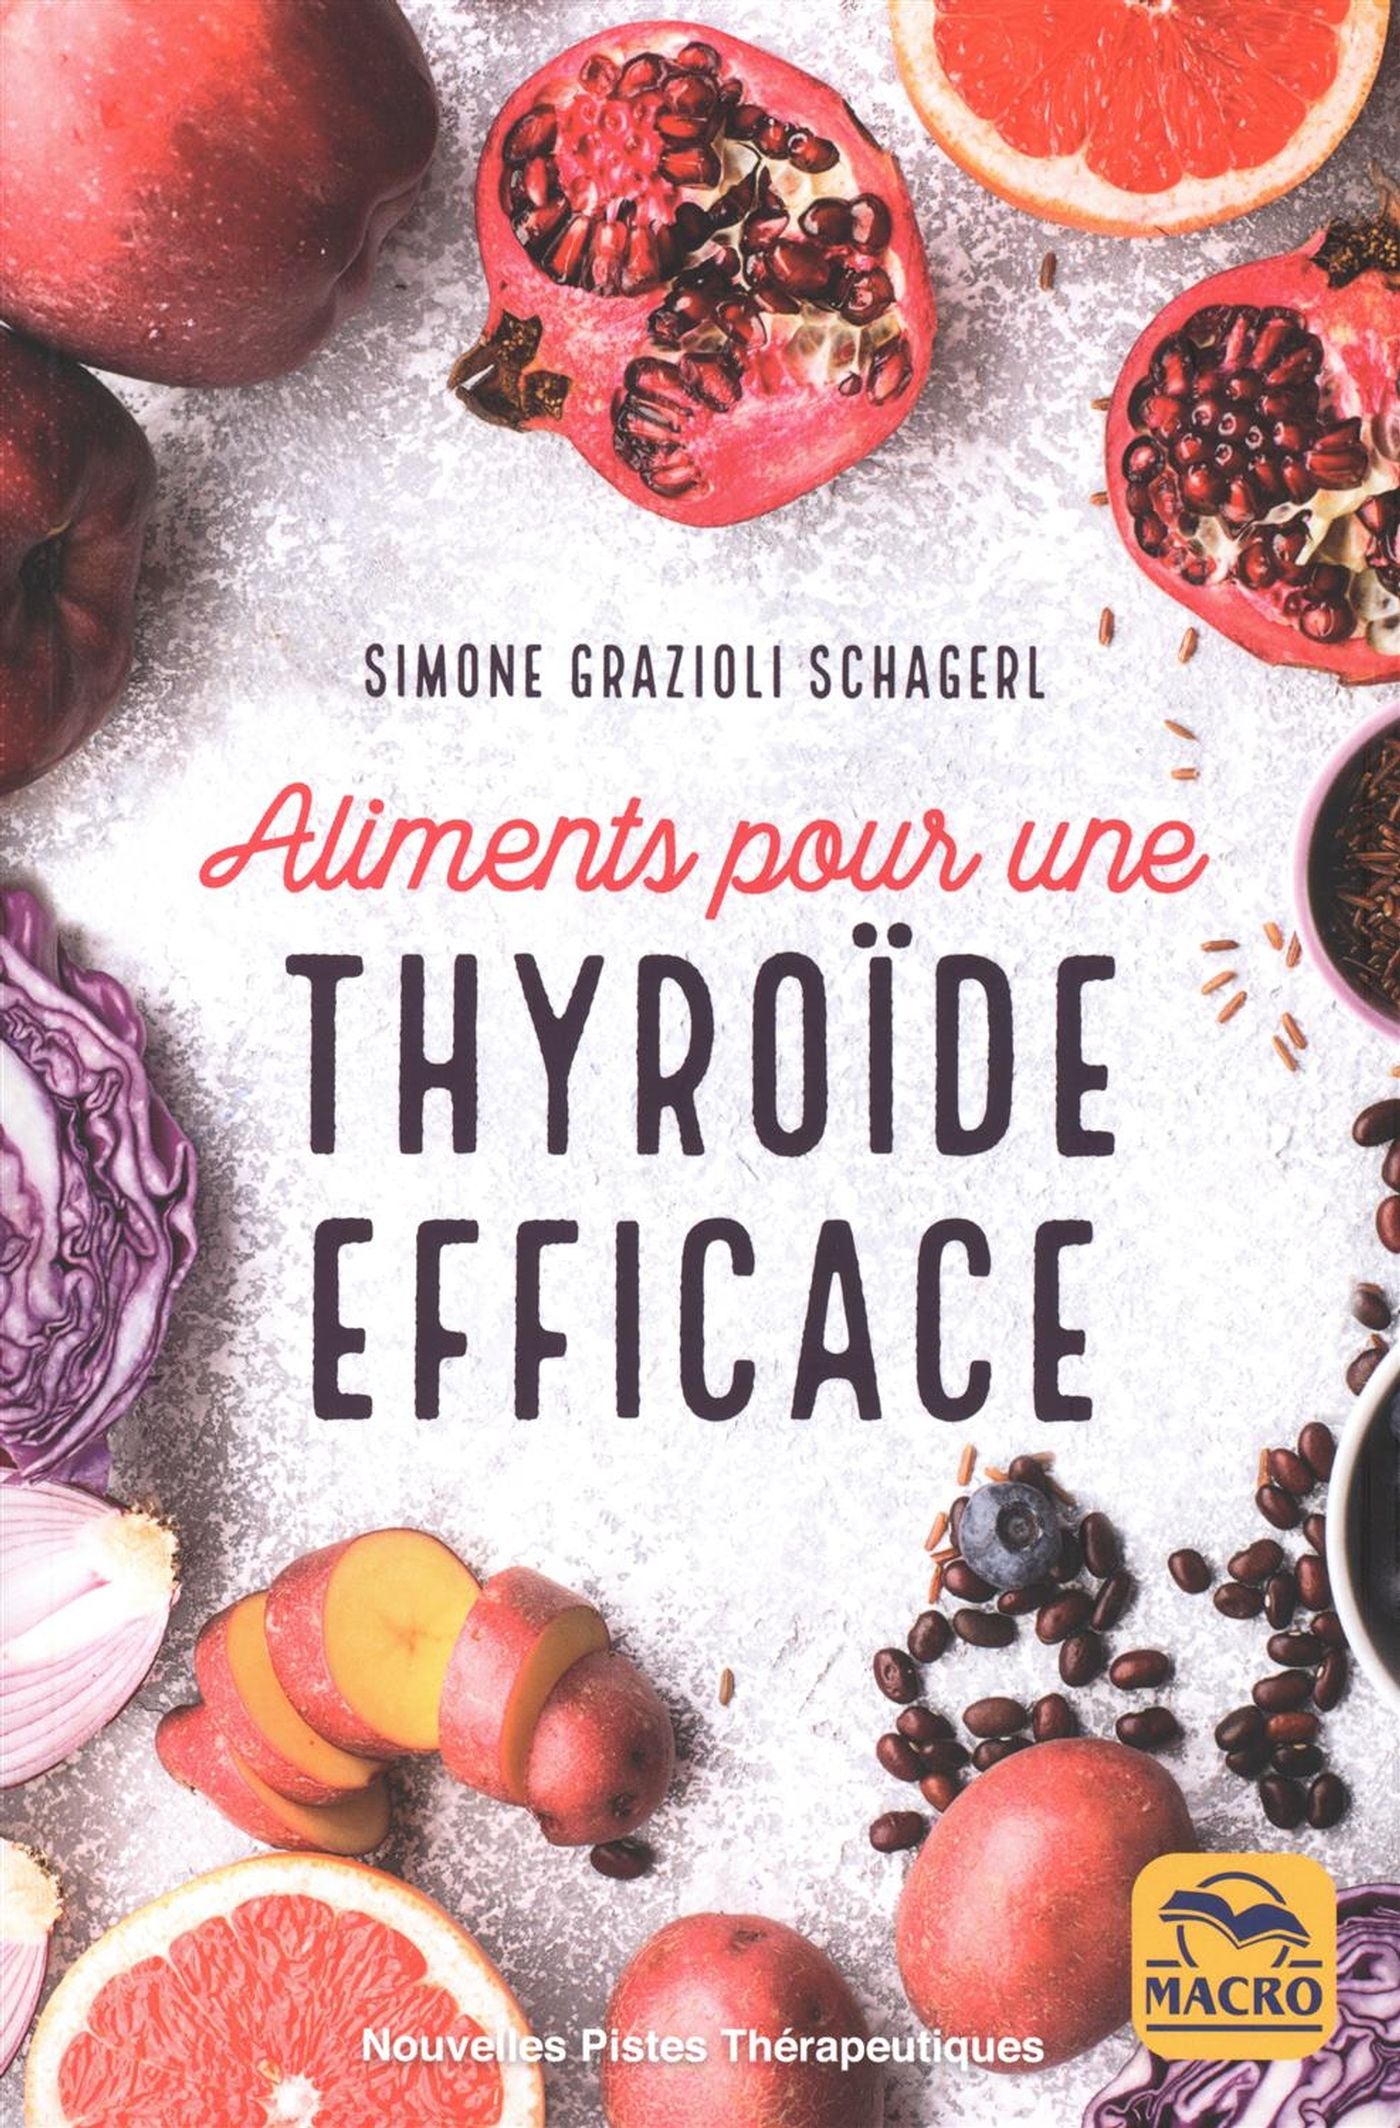 Aliments pour une thyroide efficace - Simone Grazioli Schagerl